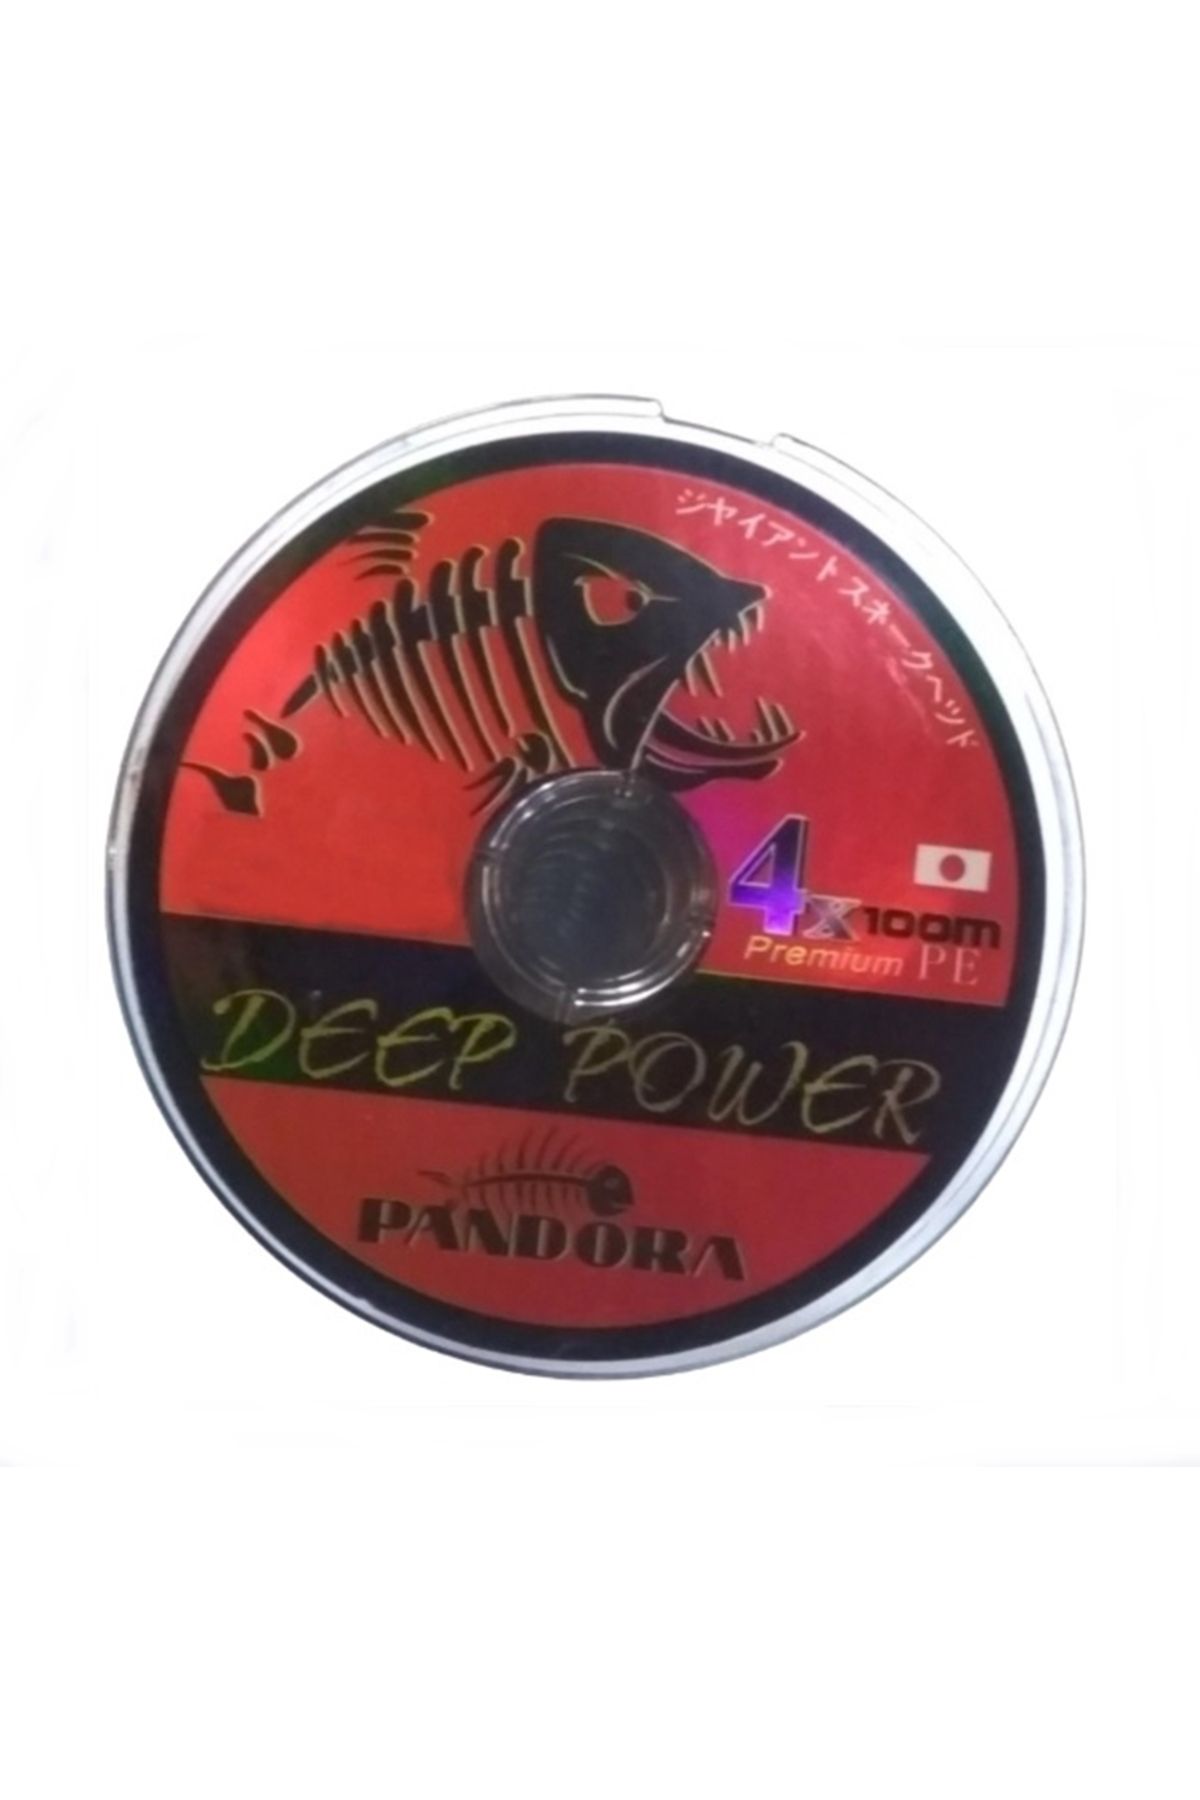 Pandora DEEP POWER 4X -100MT İP MİSİNE-16MM-10.00KĞ TEST